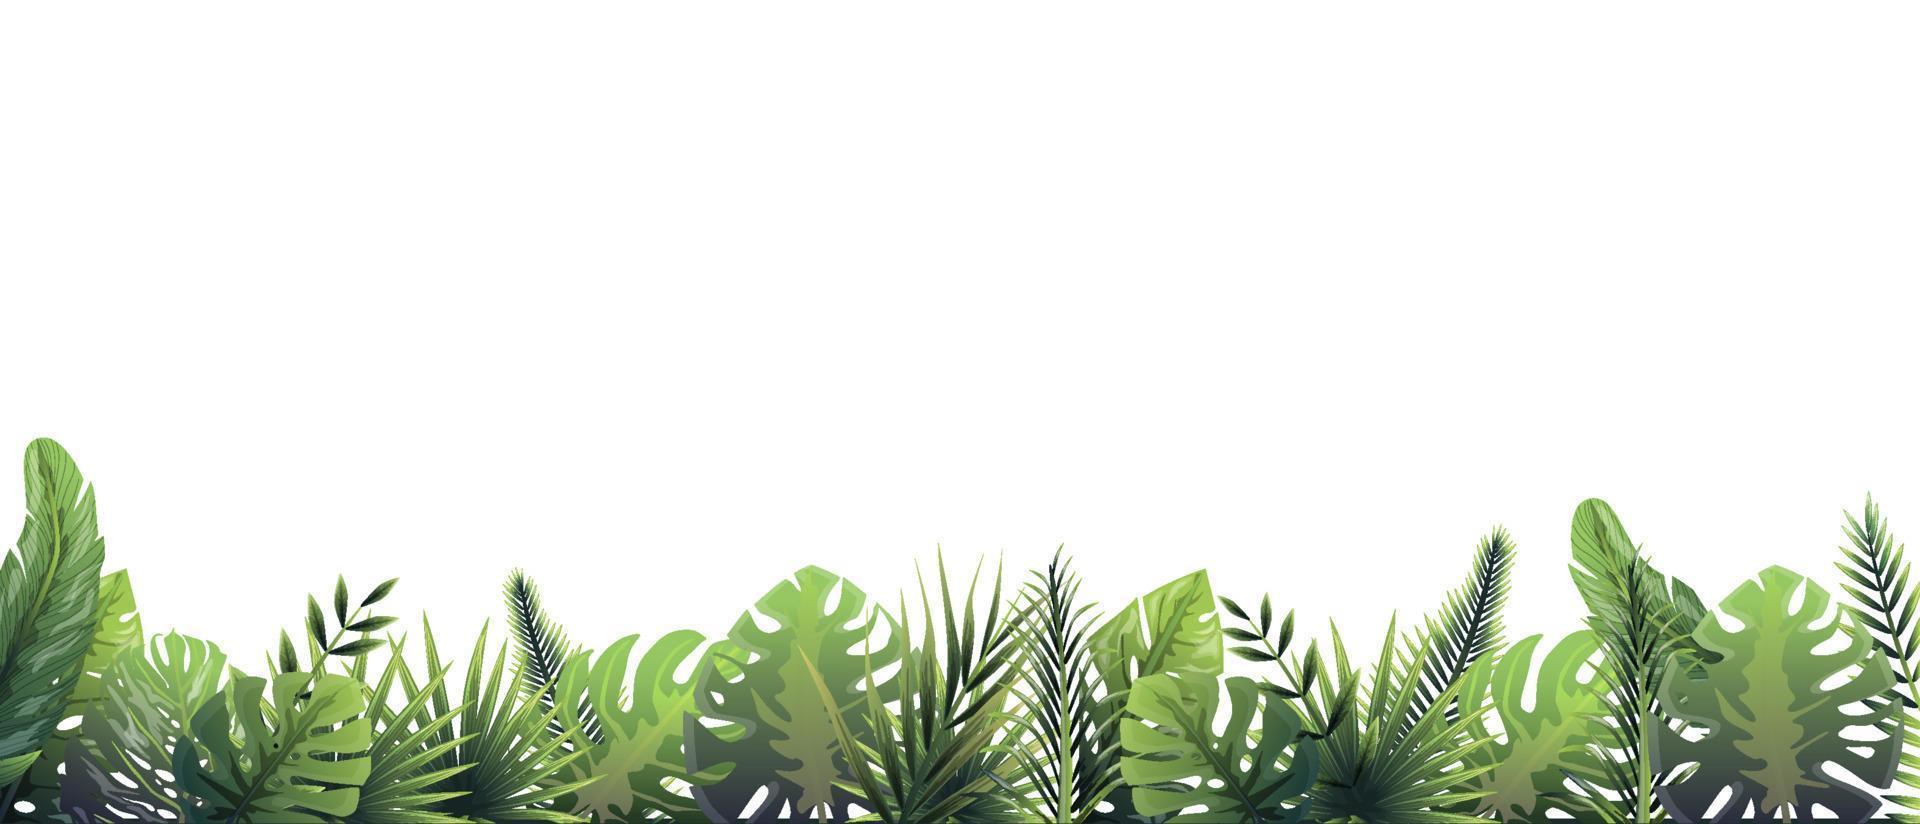 grüner Farnhintergrund nach Regen. Regenwald horizontale Dekoration bei Regenwetter floraler botanischer Hintergrund elegante hellgrüne Farnblätter, wilder Naturrasen in Vektorfarben. vektor